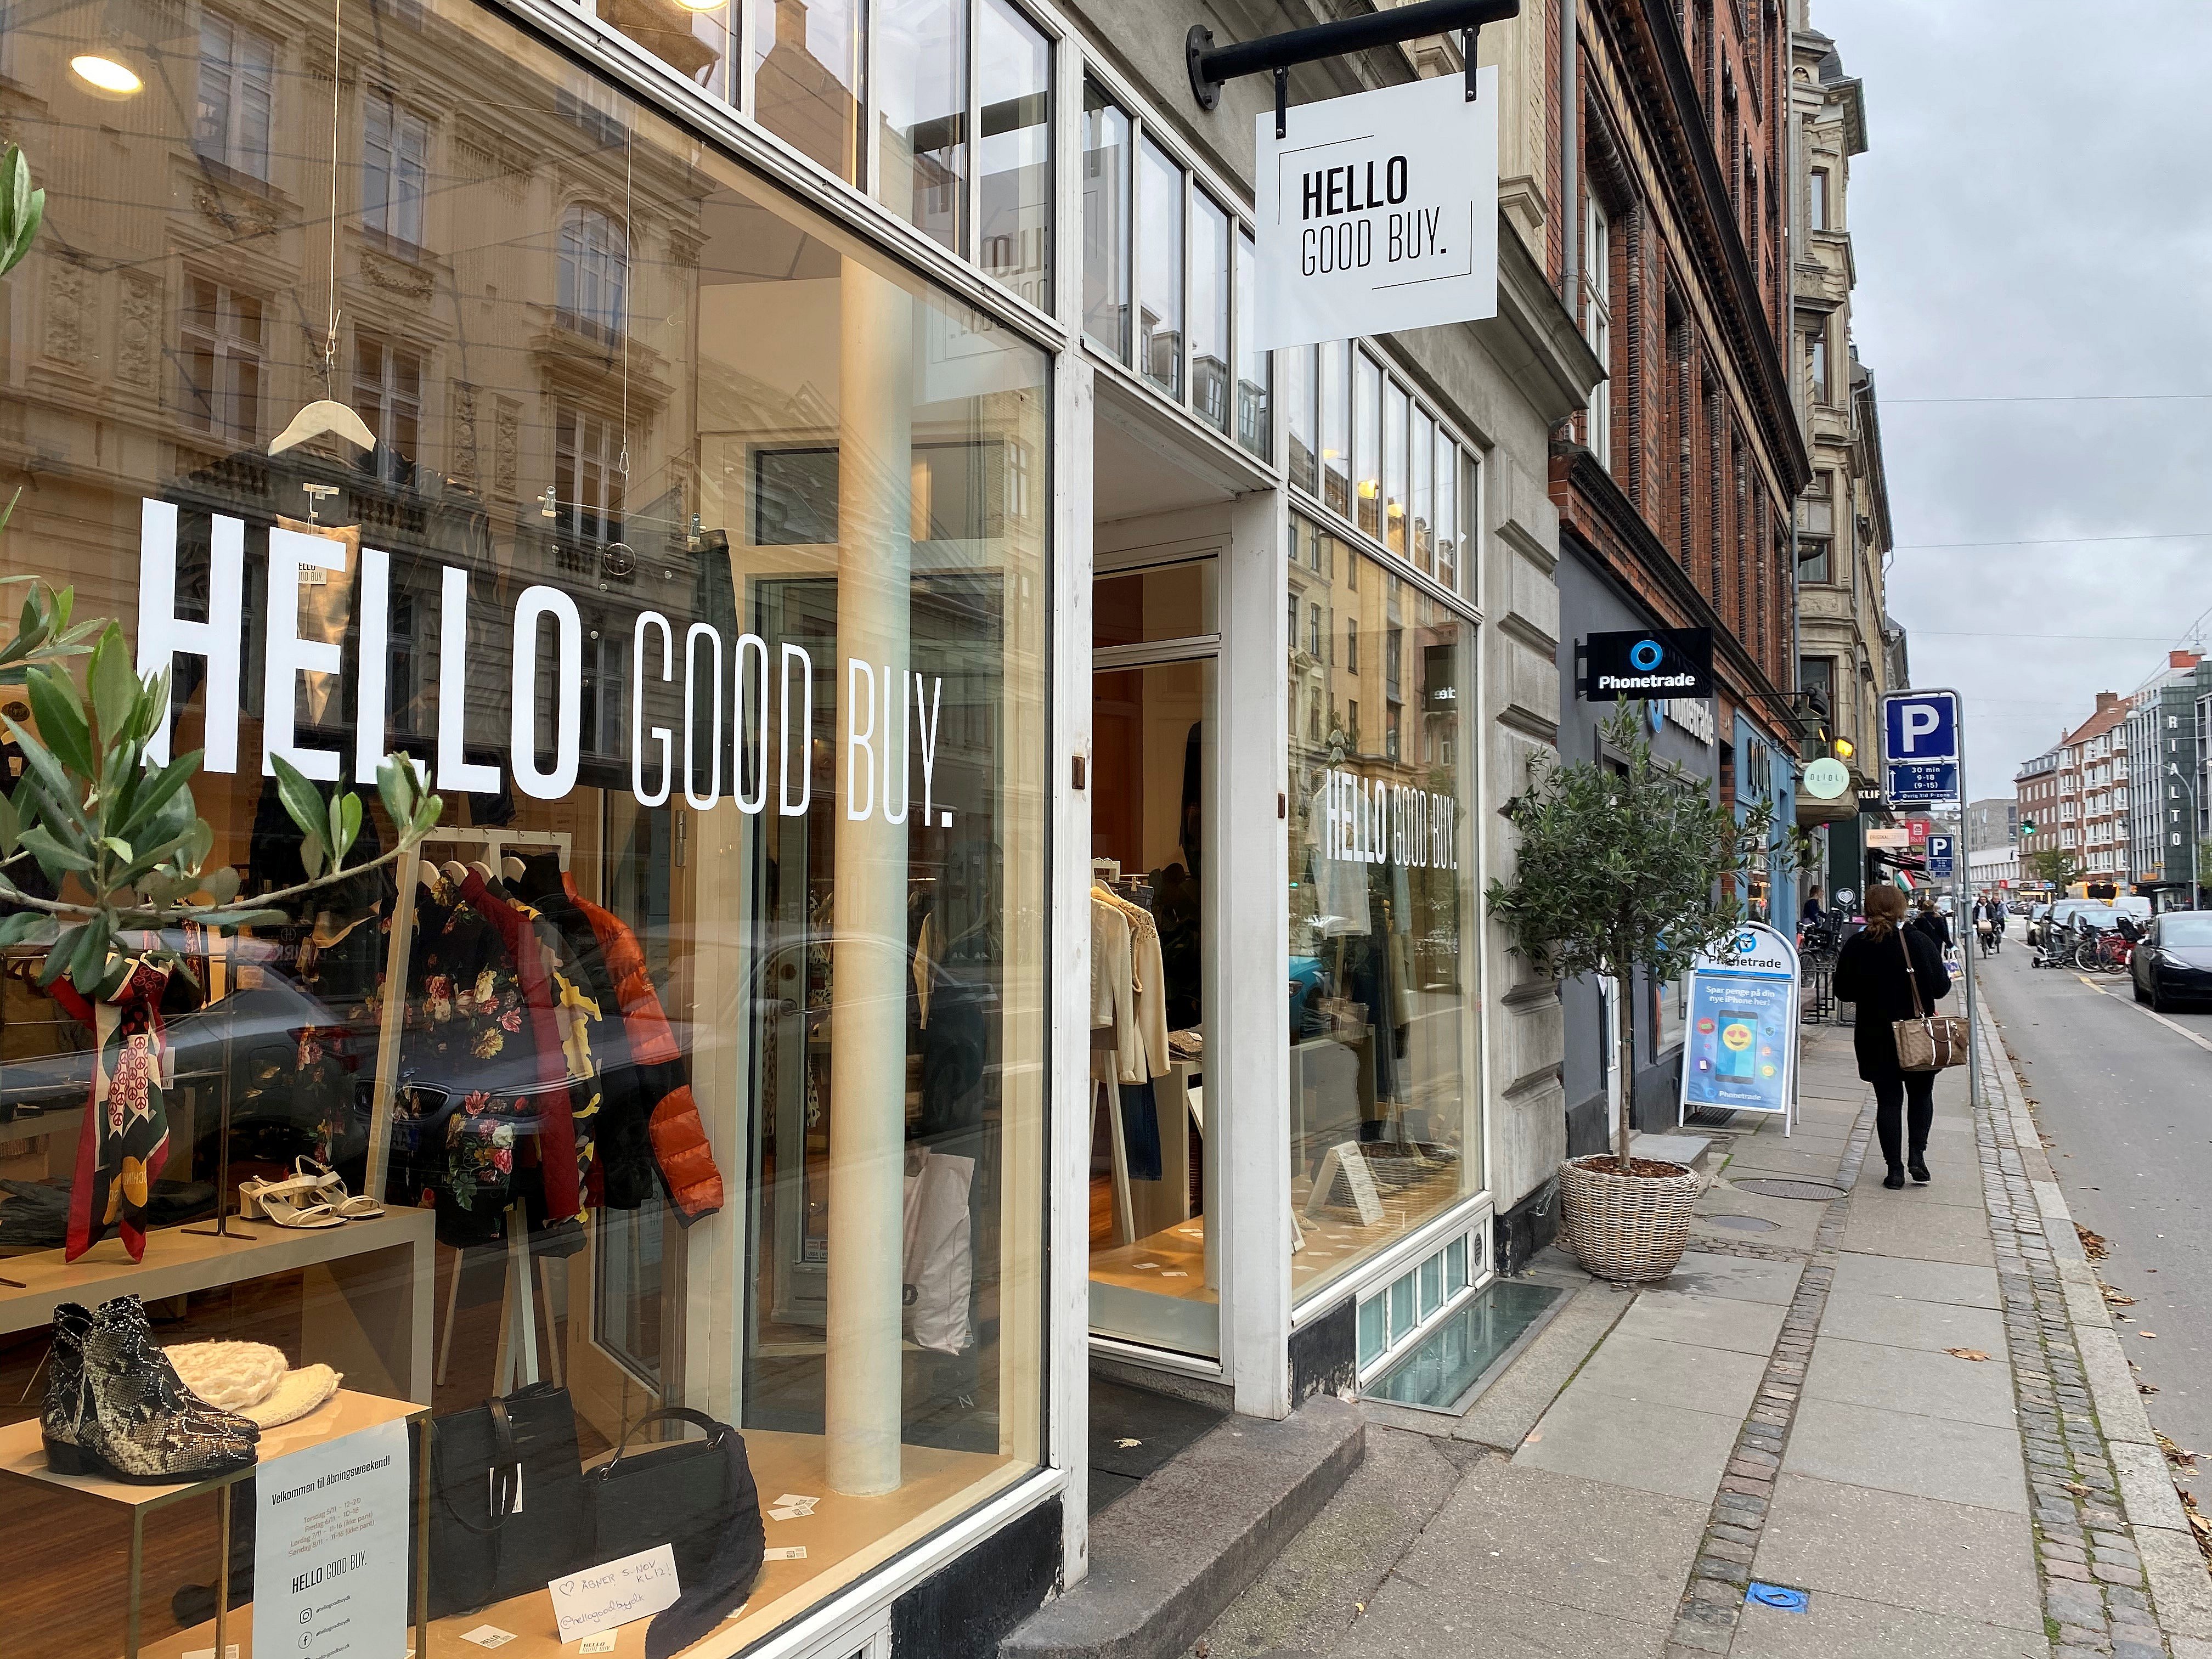 Anderledes butik i København: Her du pante dit tøj | 2 Kosmopol